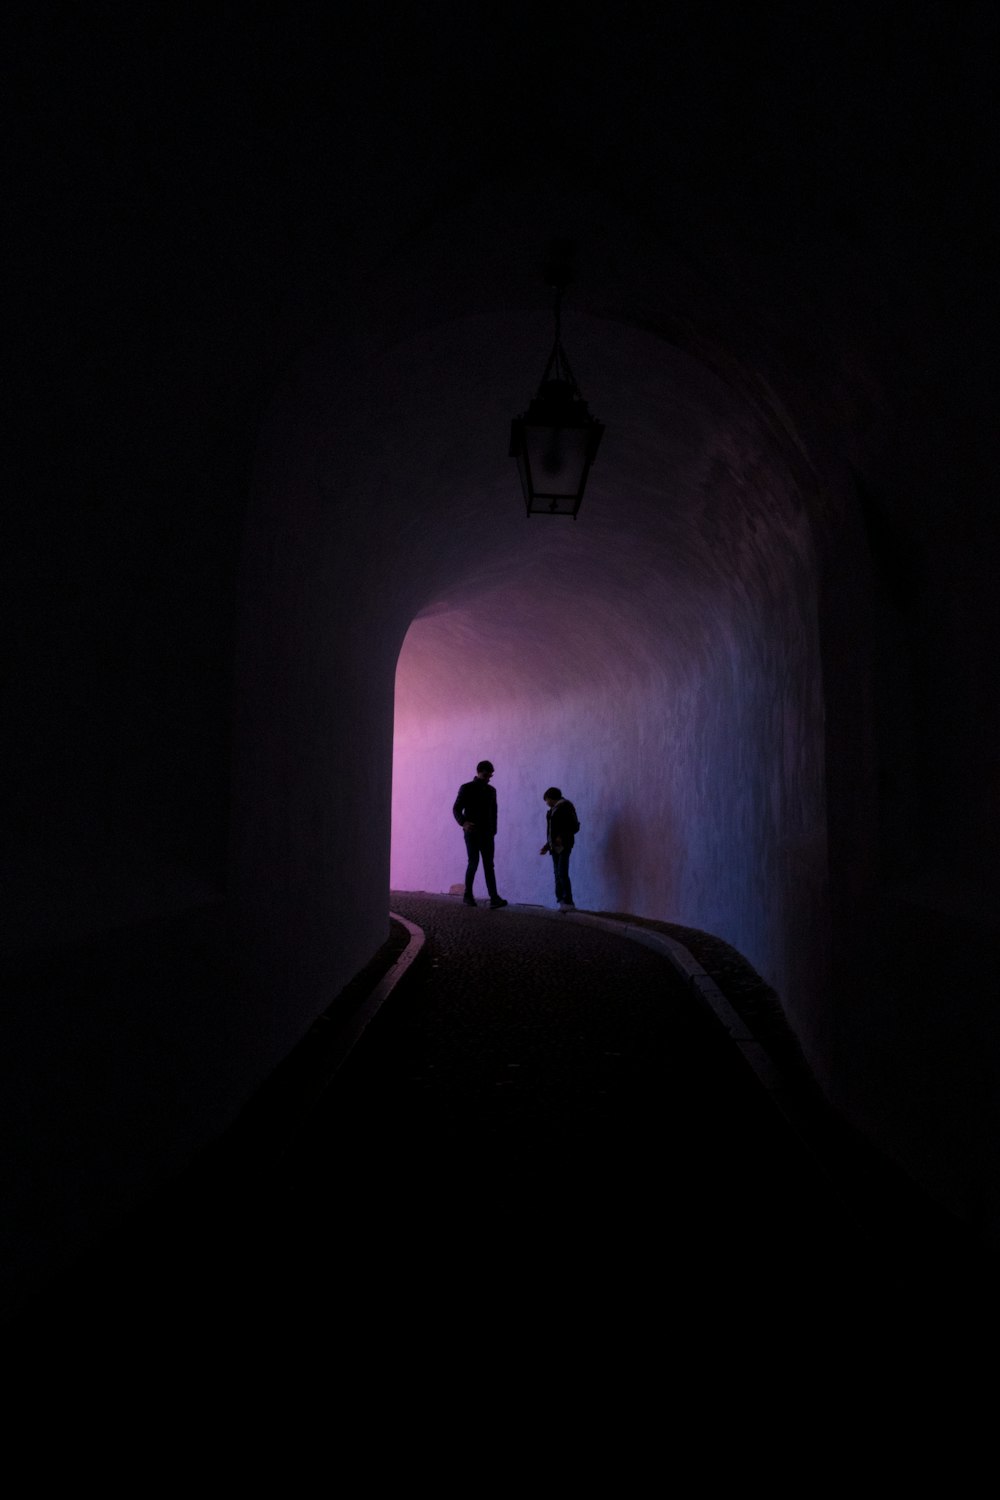 silueta de dos personas de pie dentro del túnel